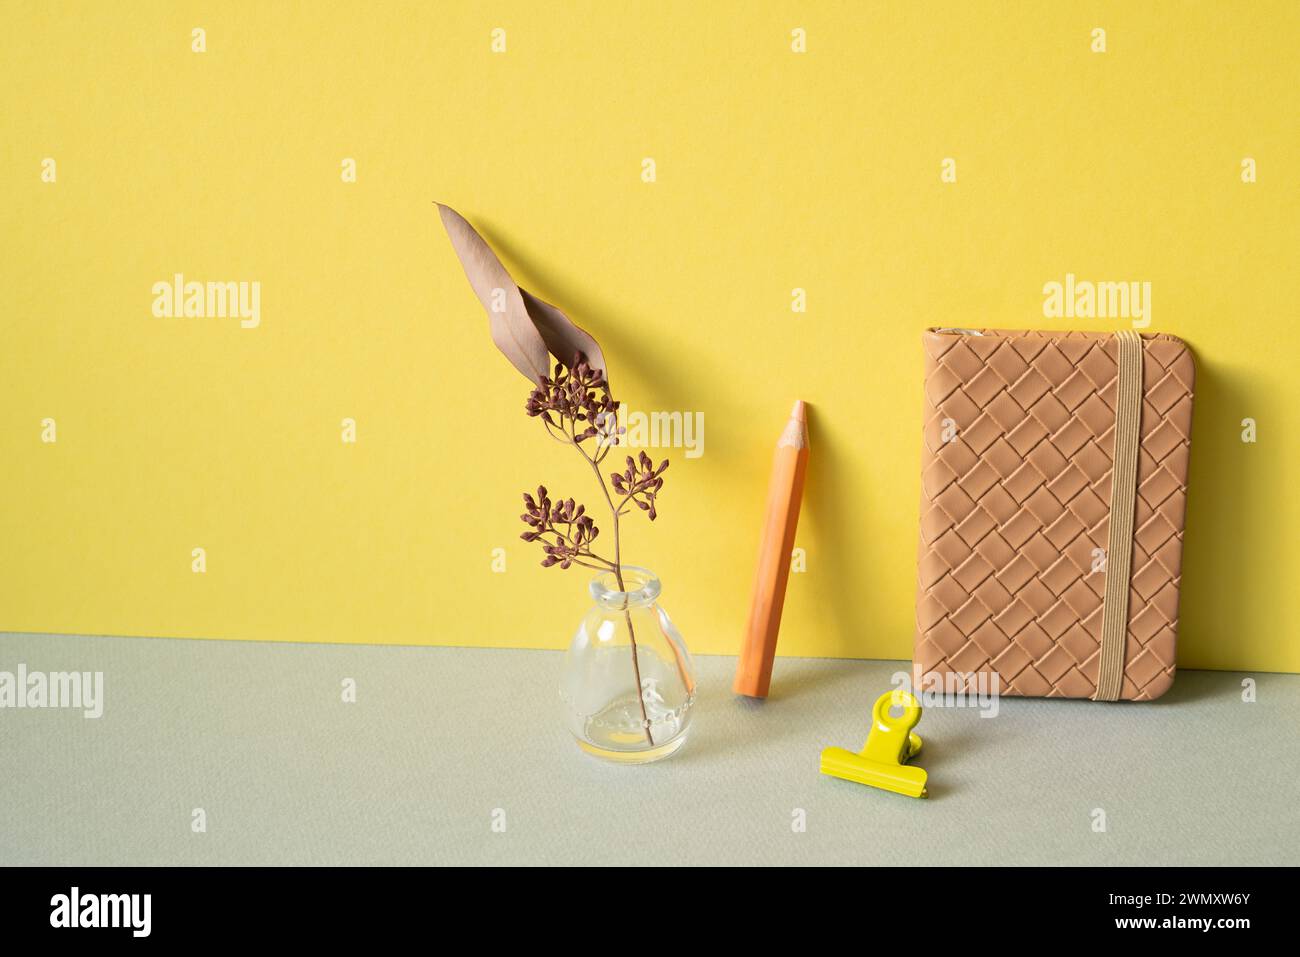 Tagebuch-Notizbuch, Buntstift, Clip, Vase mit trockener Blume auf grauem Schreibtisch. Gelber Wandhintergrund. Arbeitsbereich Stockfoto